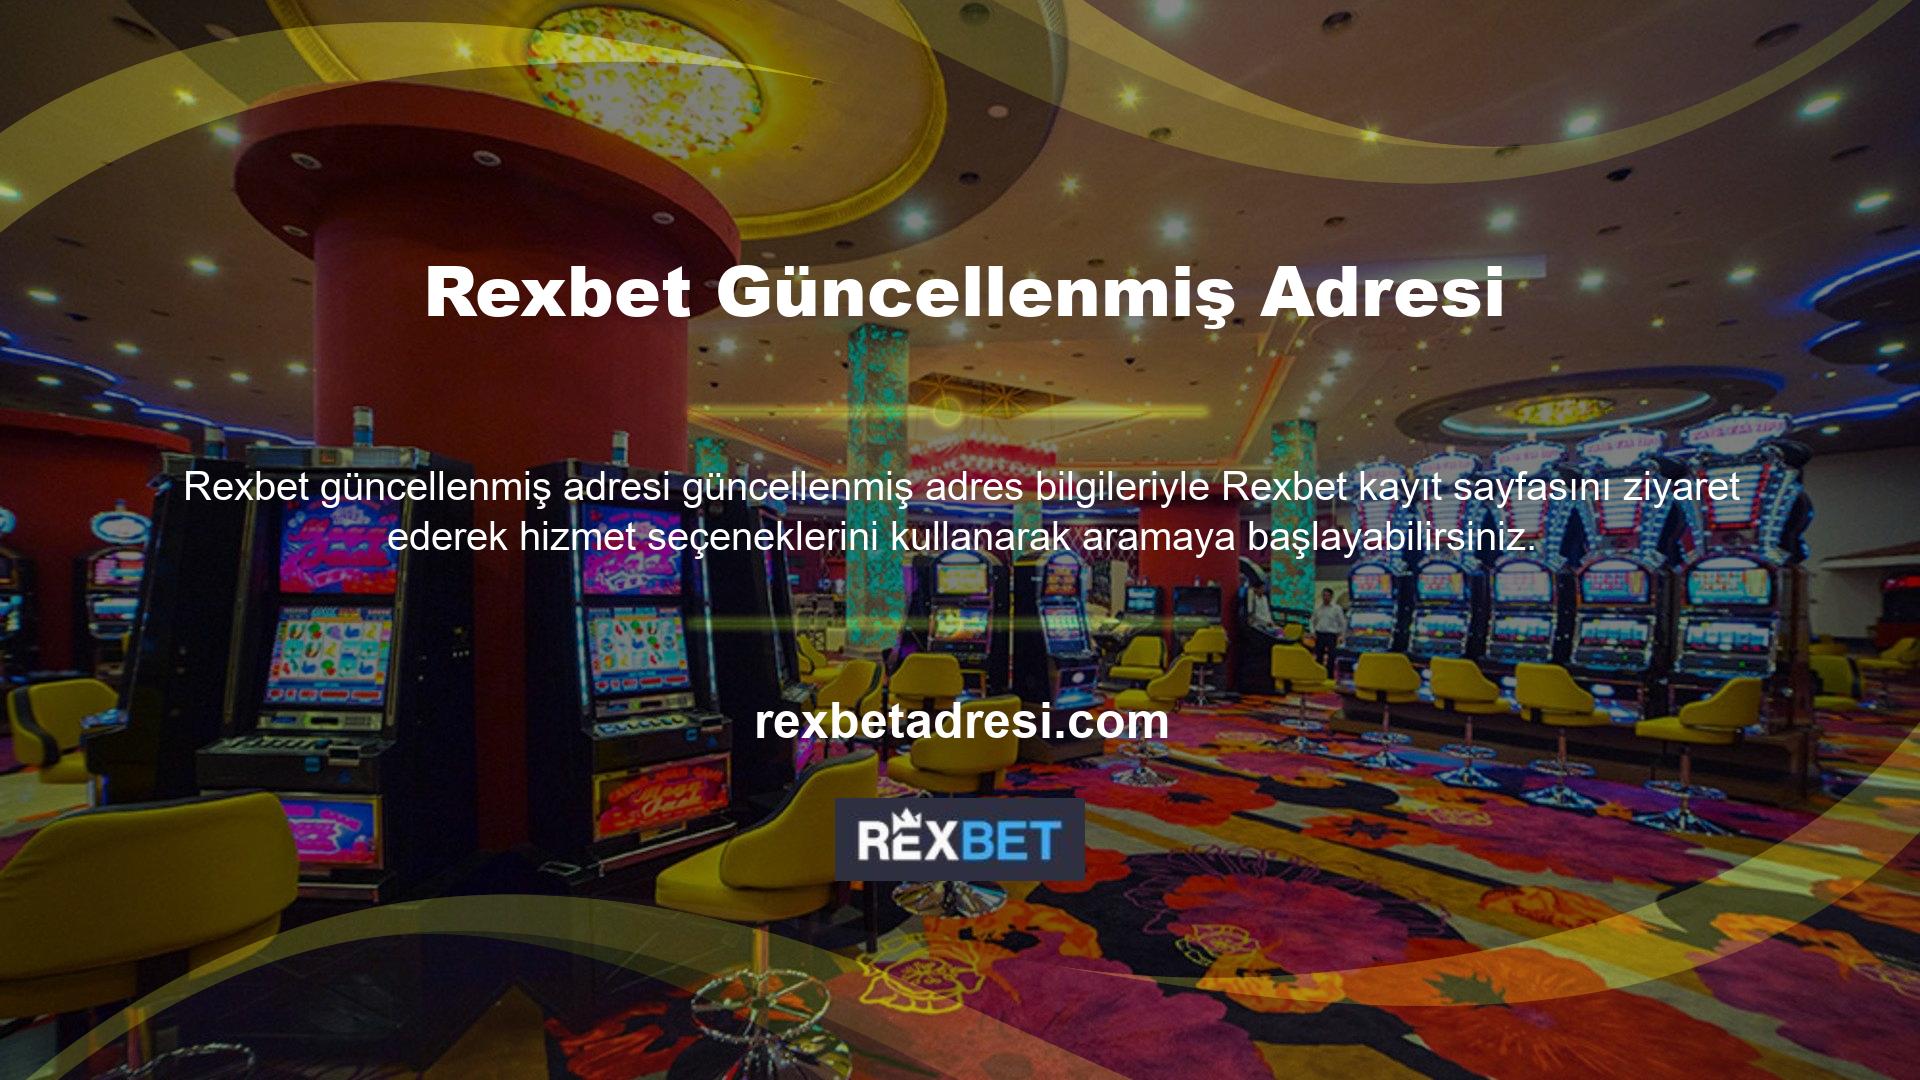 Rexbet web sitesi bahisleri, canlı bahisler, canlı casino, casino, sanal sporlar, canlı bingo ve daha fazlası